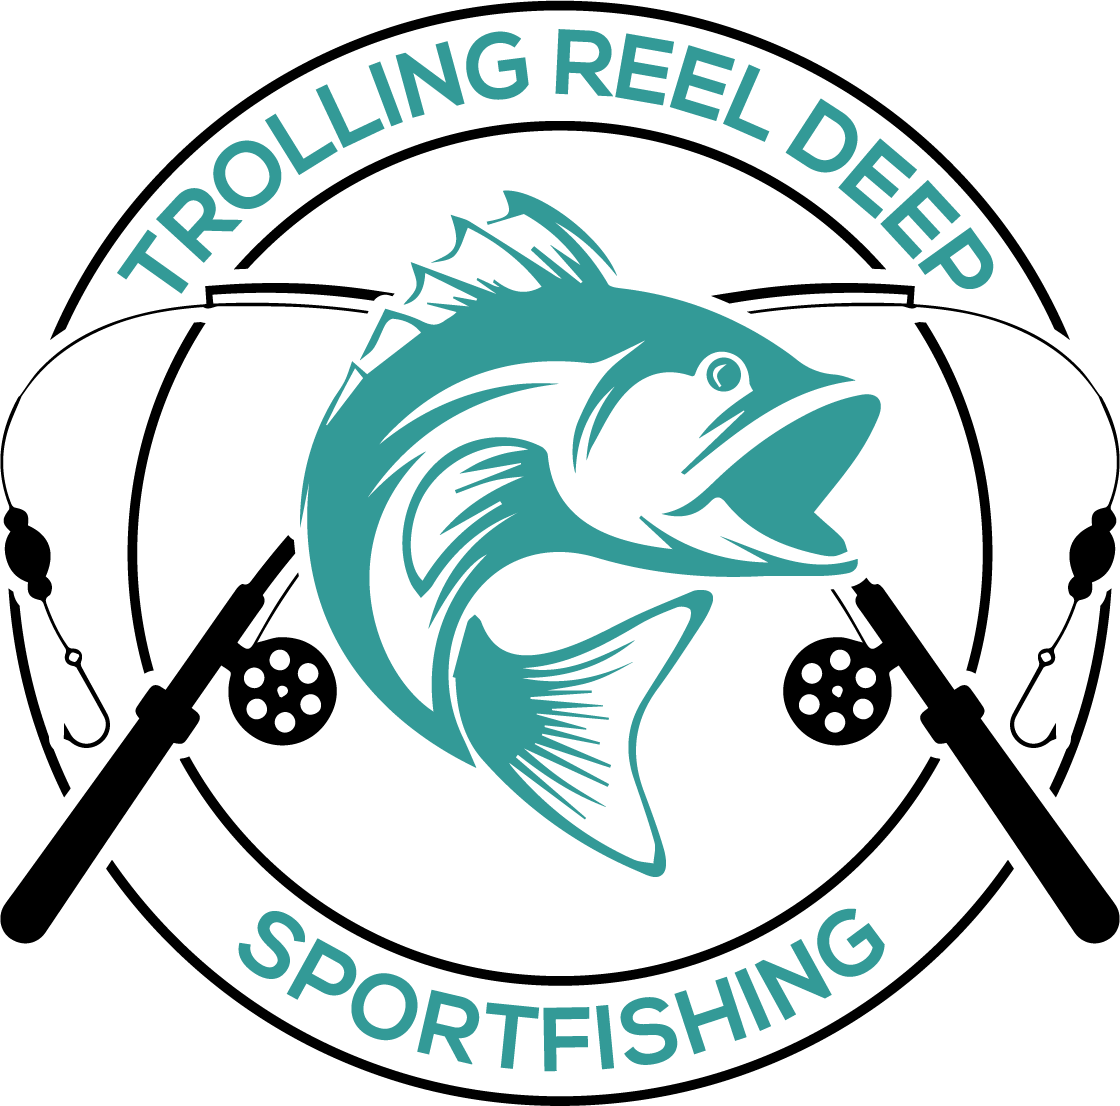 Trolling Reel Deep Sportfishing